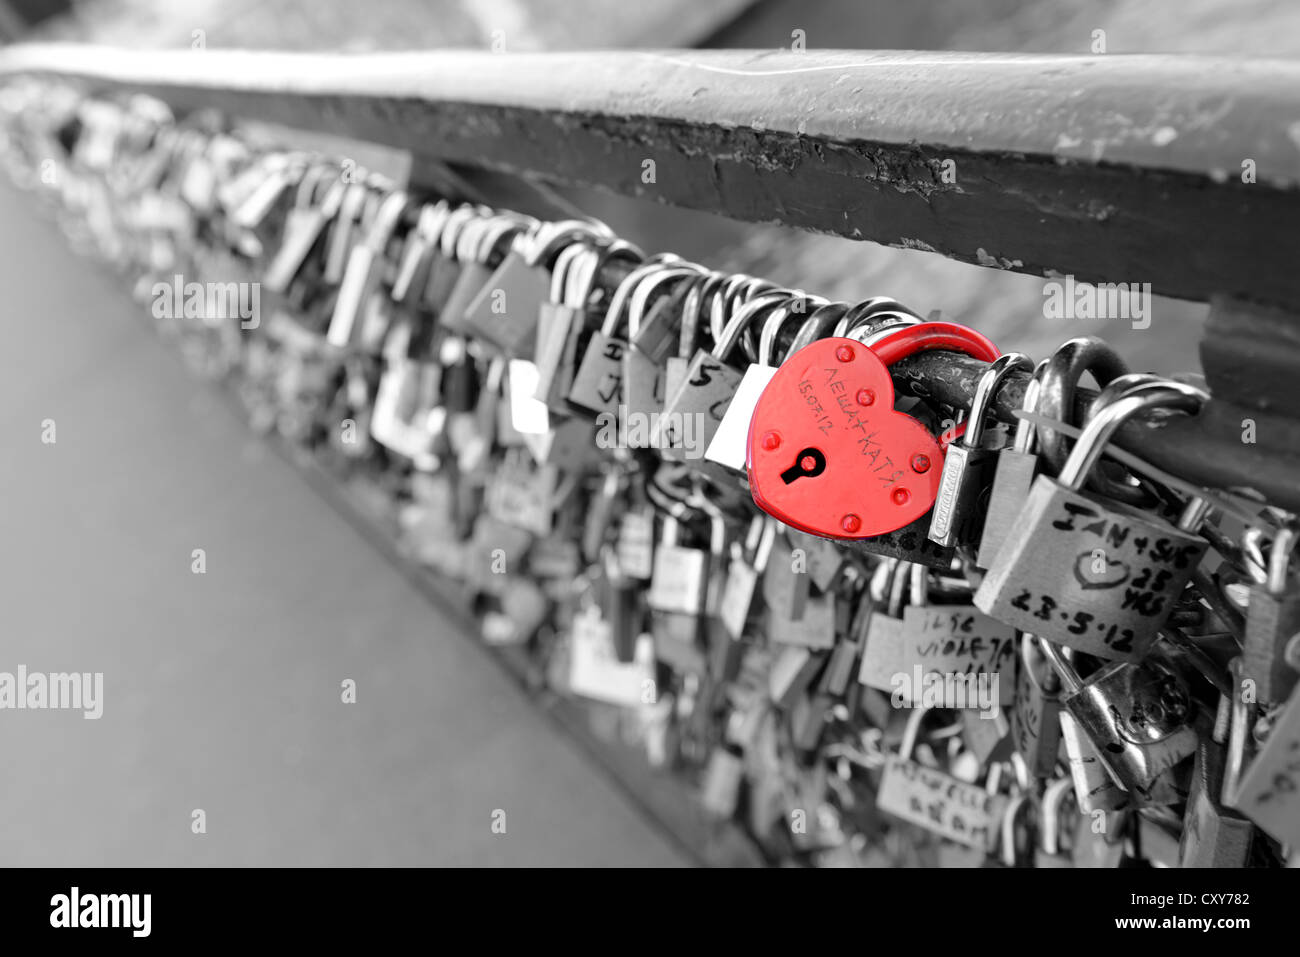 Amante di lucchetti che adornano numerosi ponti di Parigi, Francia, cuore rosso a forma di lucchetto sfondo monocromo, amore si blocca Foto Stock